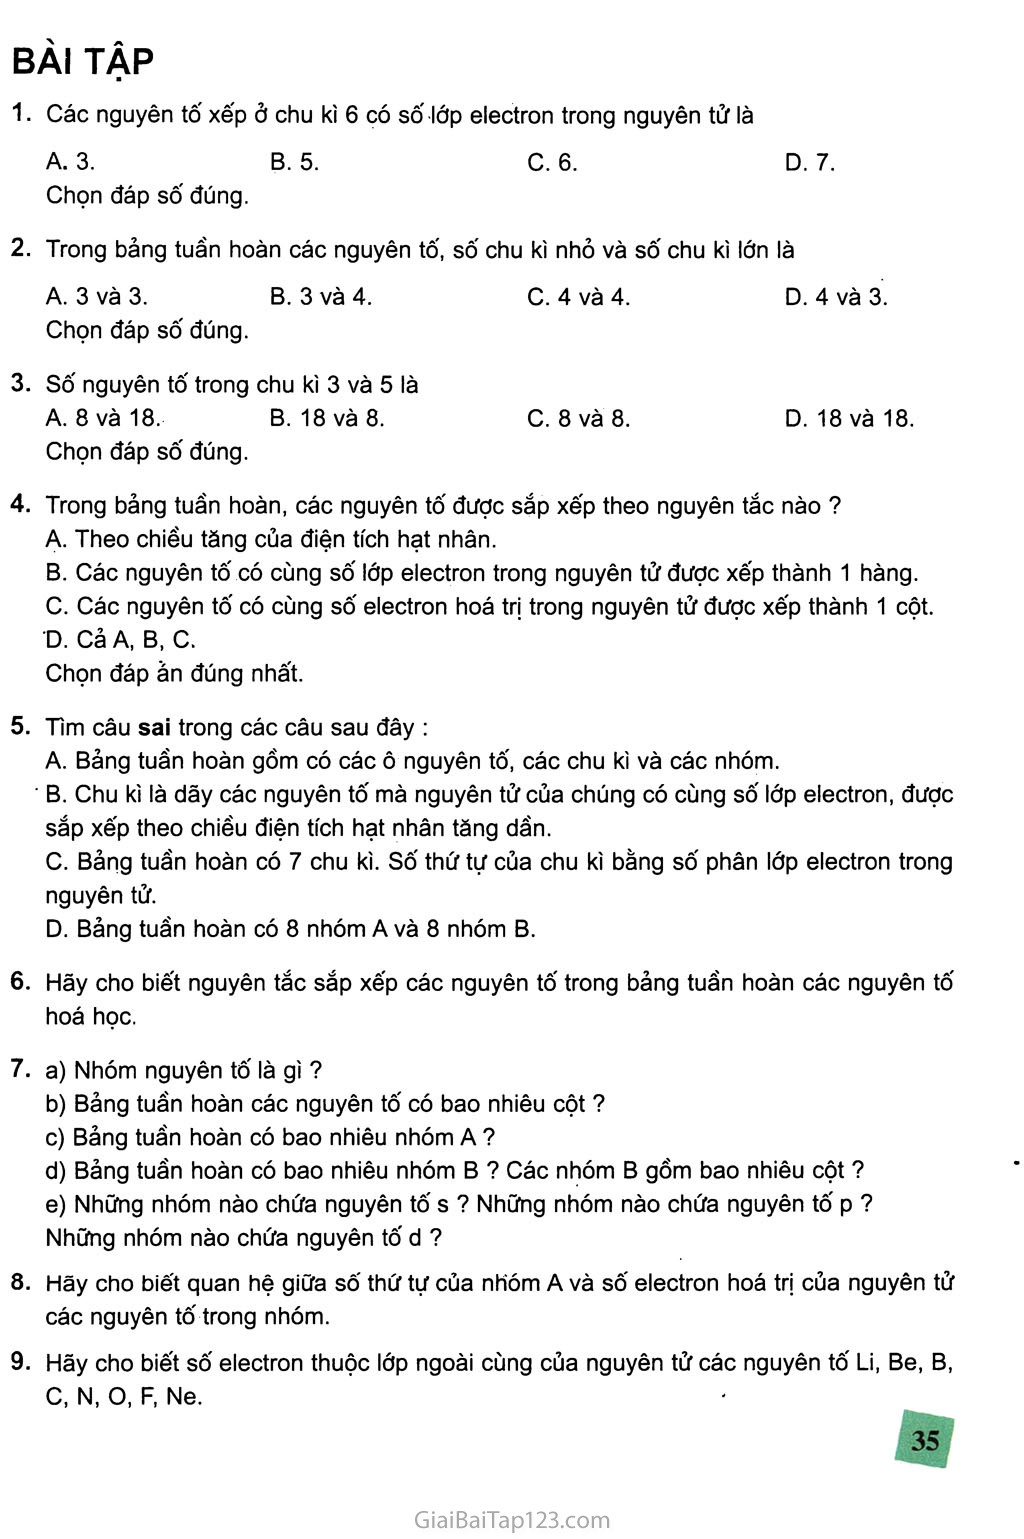 Bài 7. Bảng tuần hoàn các nguyên tố hóa học trang 5